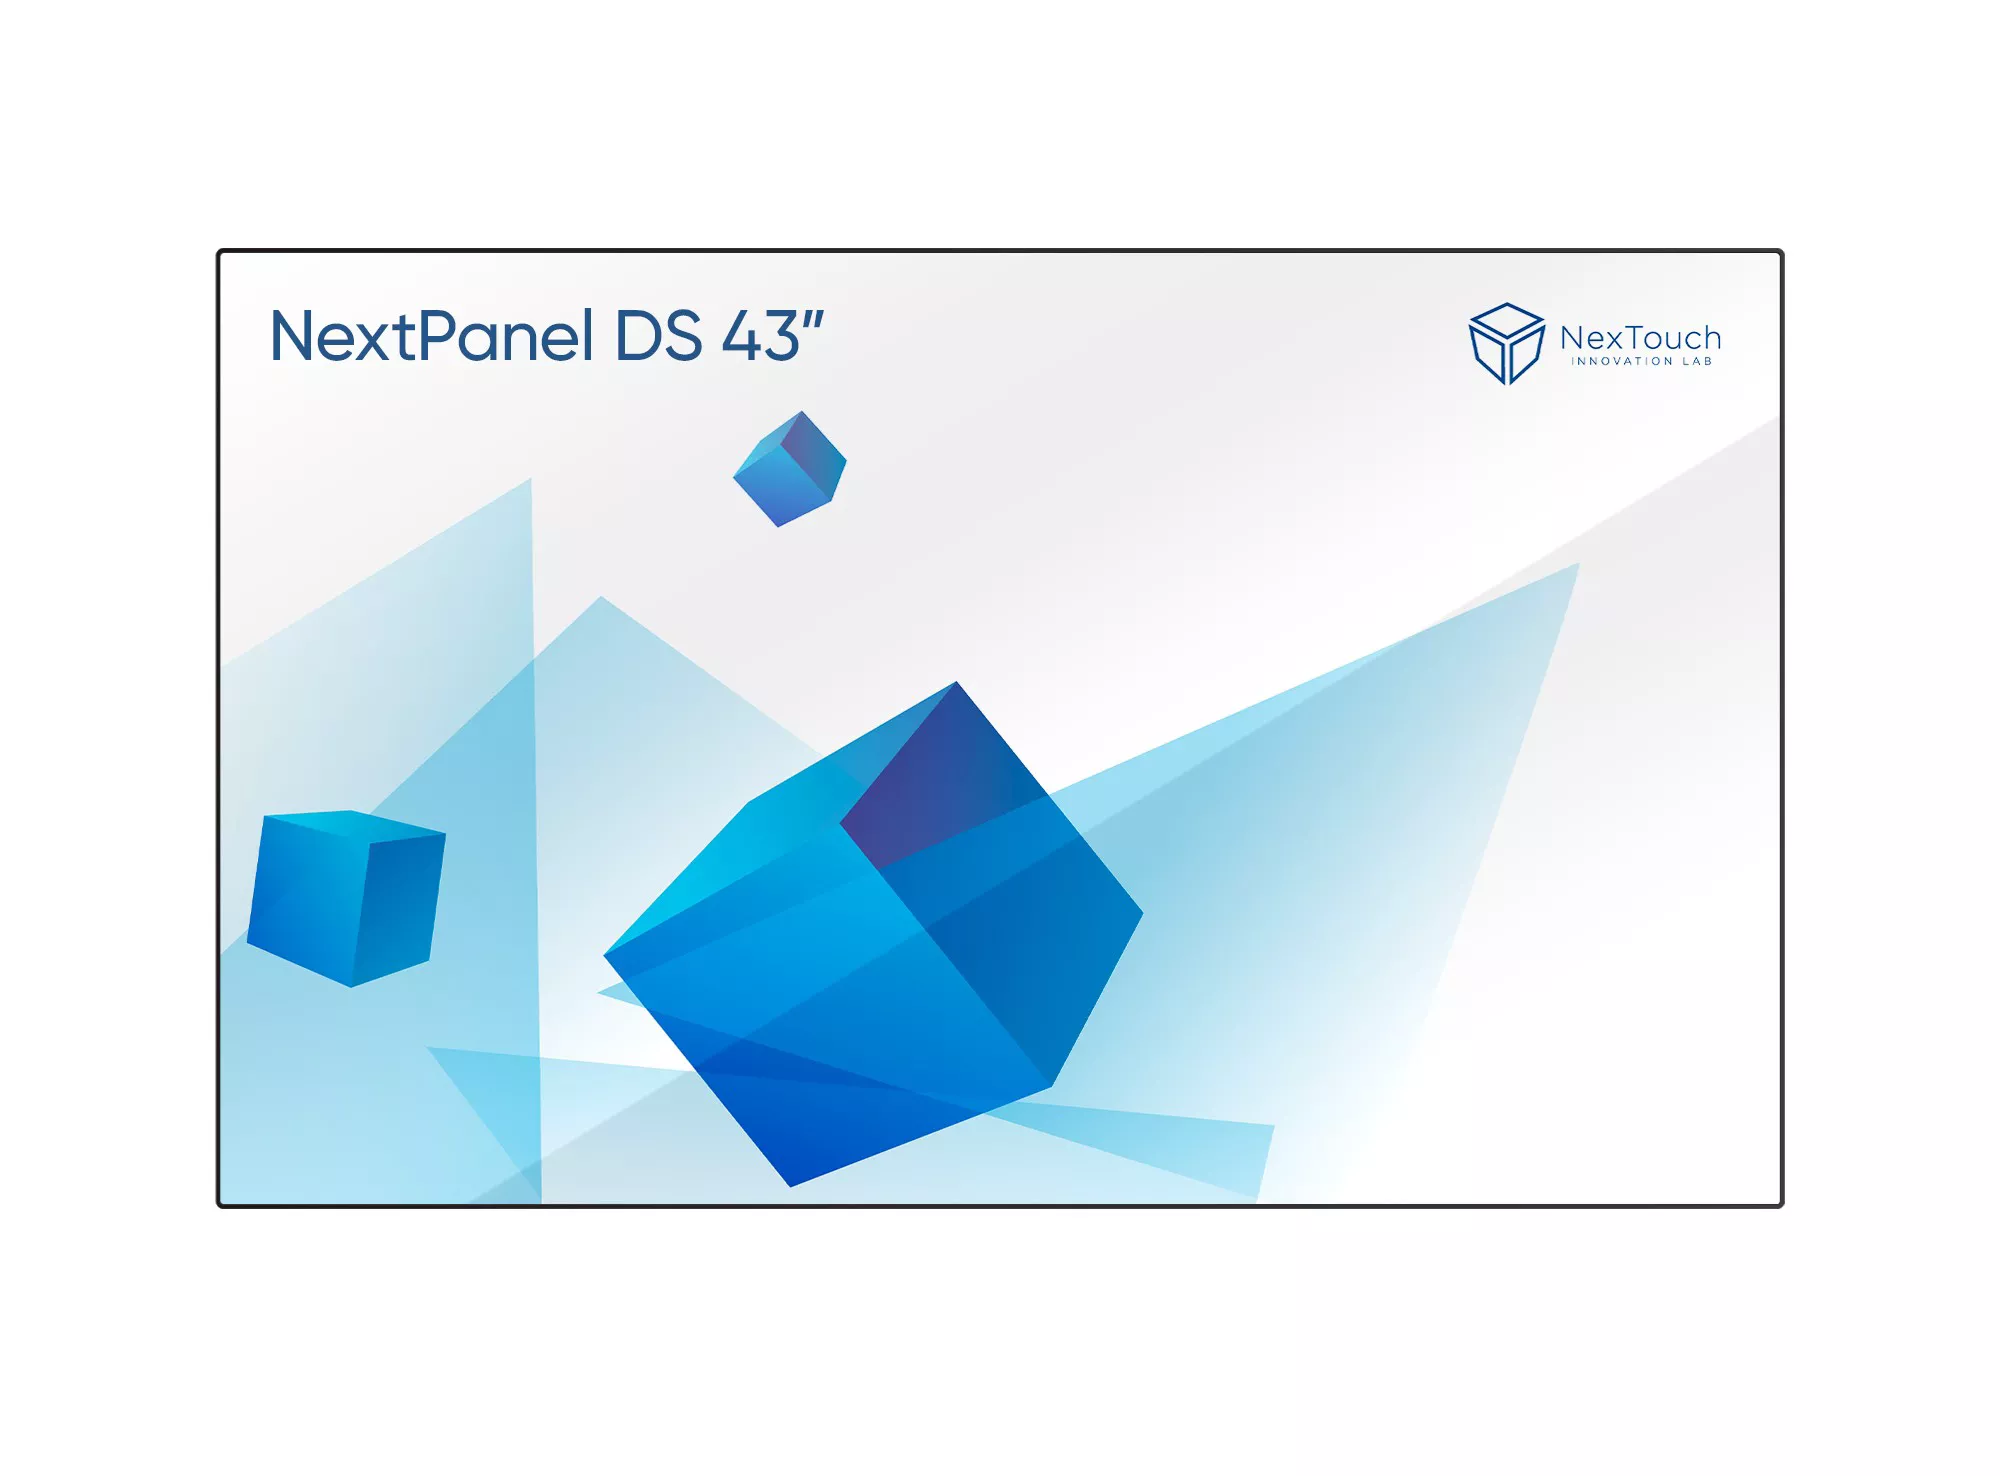 Дисплей NexTouch NextPanel DS 43 профессиональный